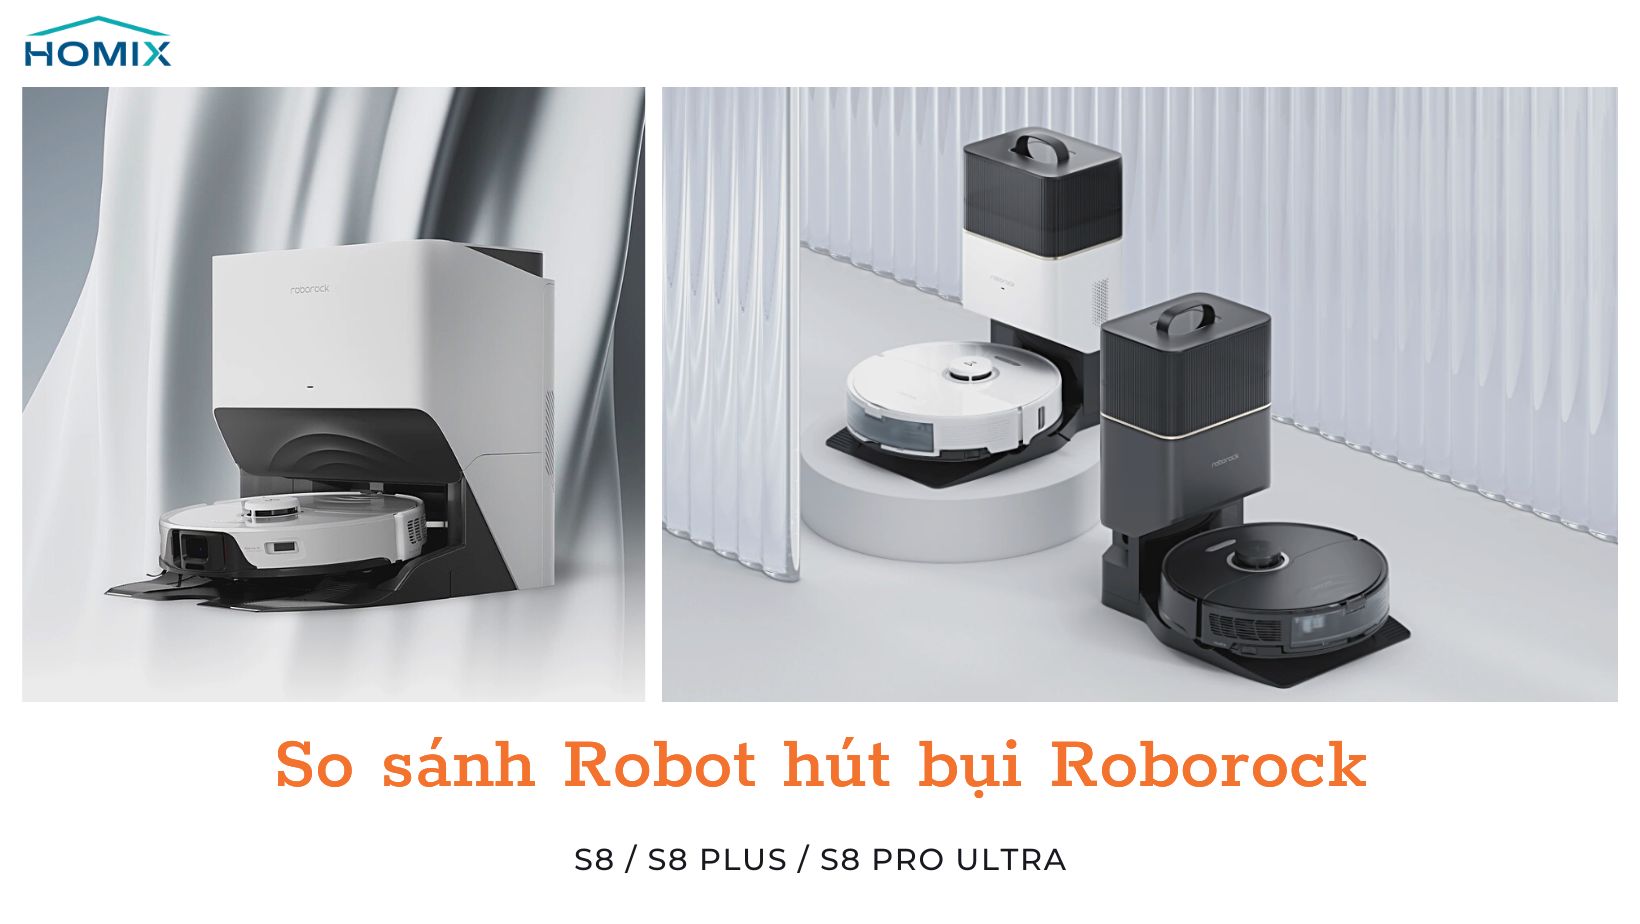 So sánh 3 sản phẩm robot hút bụi Roborock S8